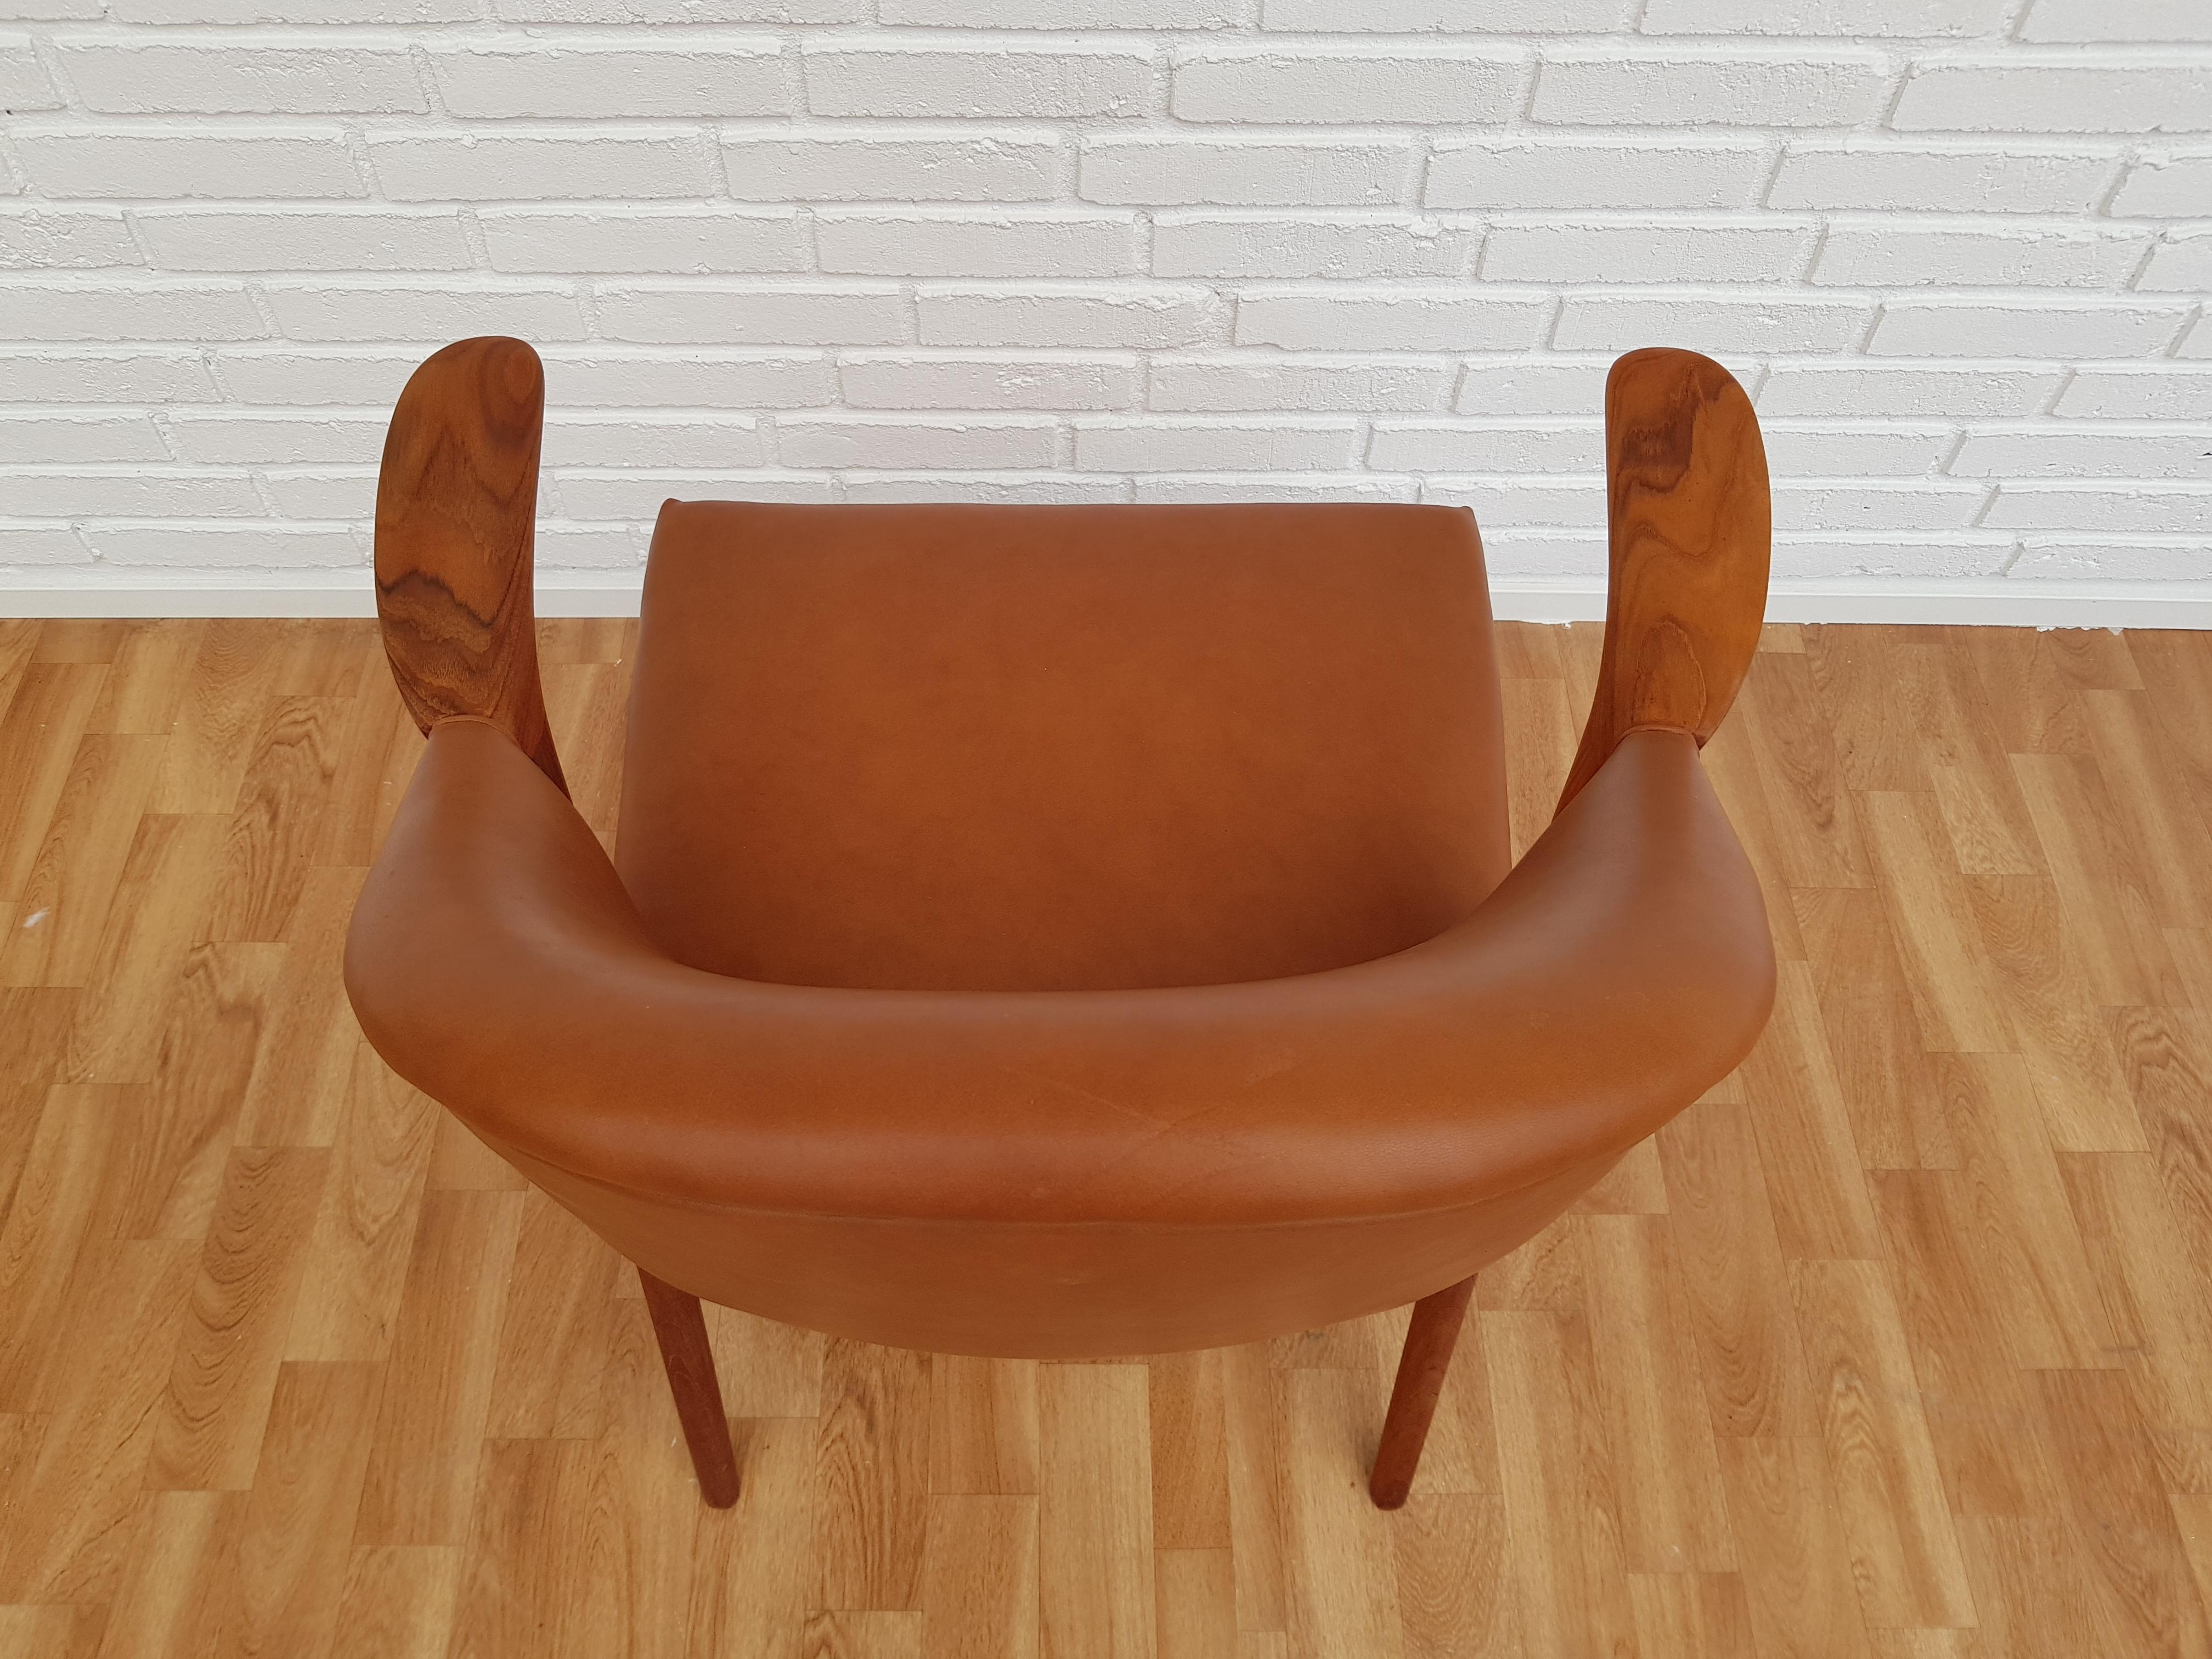 Scandinavian Modern Danish Design by Kurt Olsen, Armchair 1960s, Leather, Completely Restored For Sale